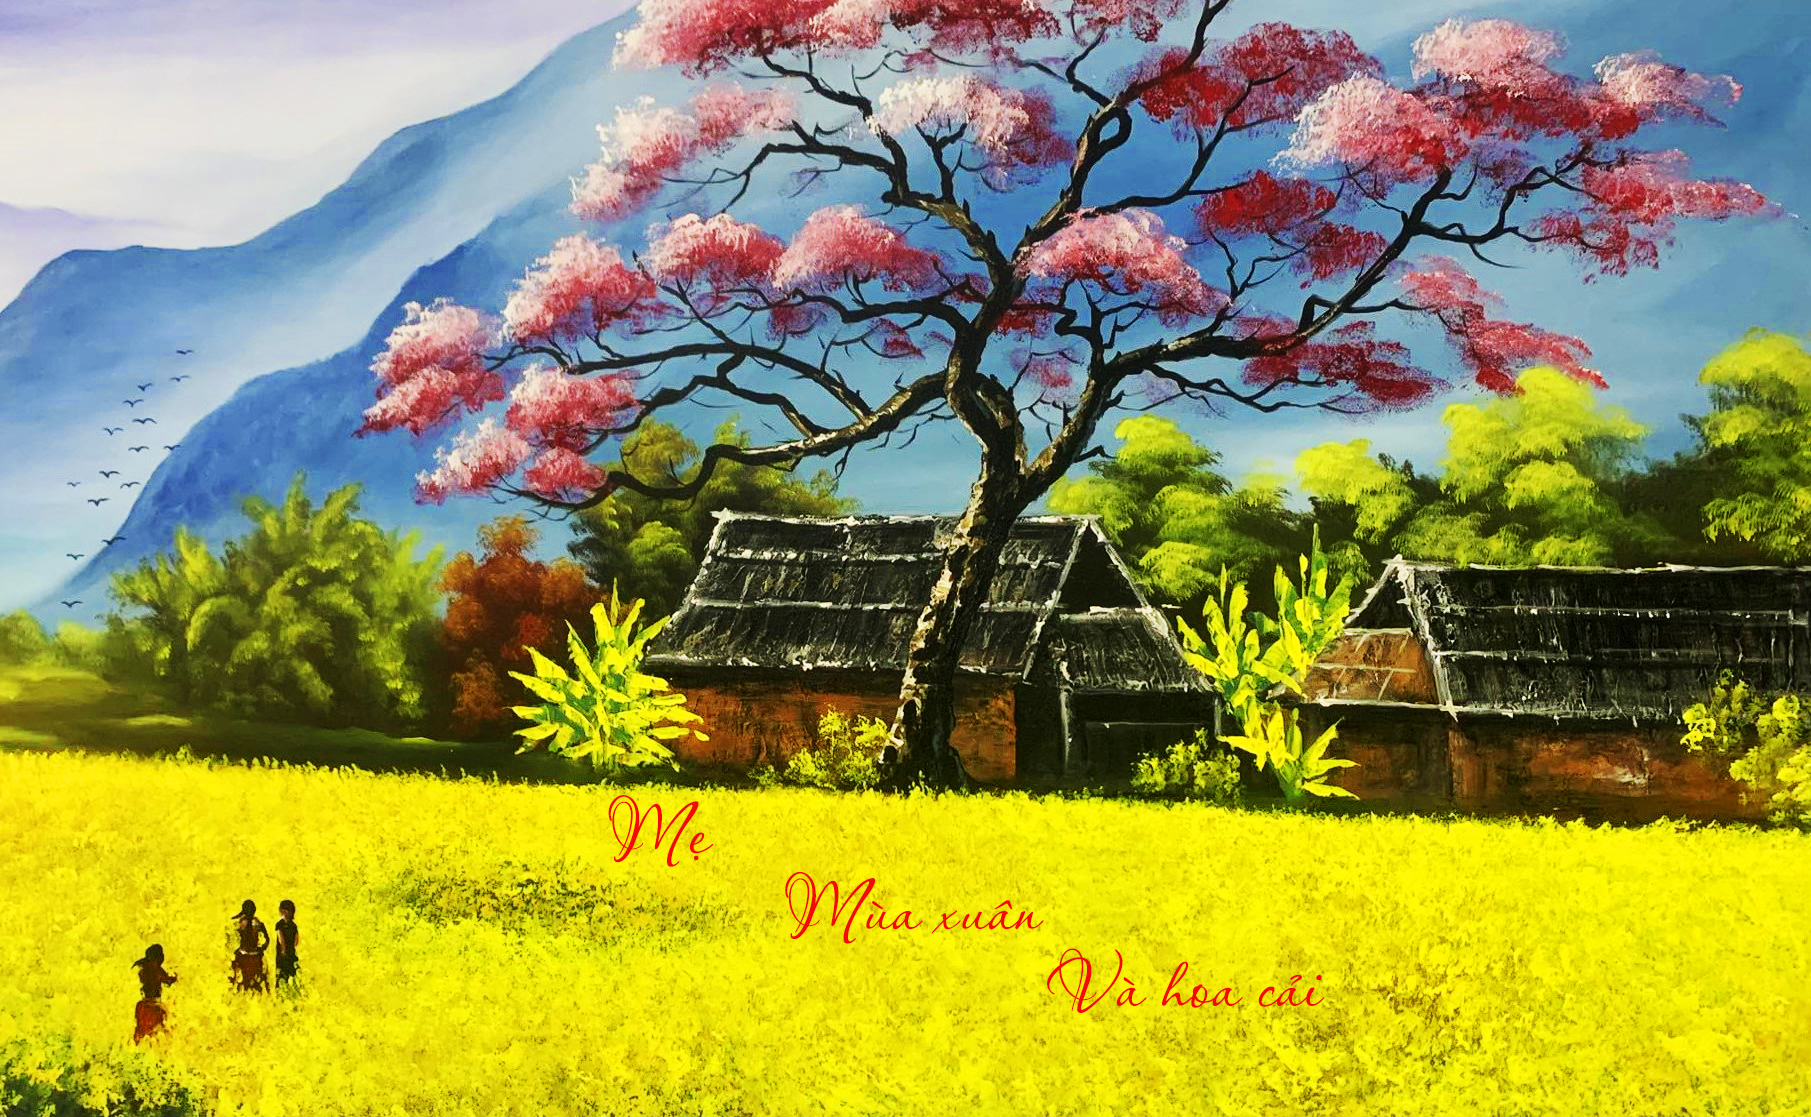 Tản văn Mẹ, mùa xuân và hoa cải của tác giả Lê Thị Xuân